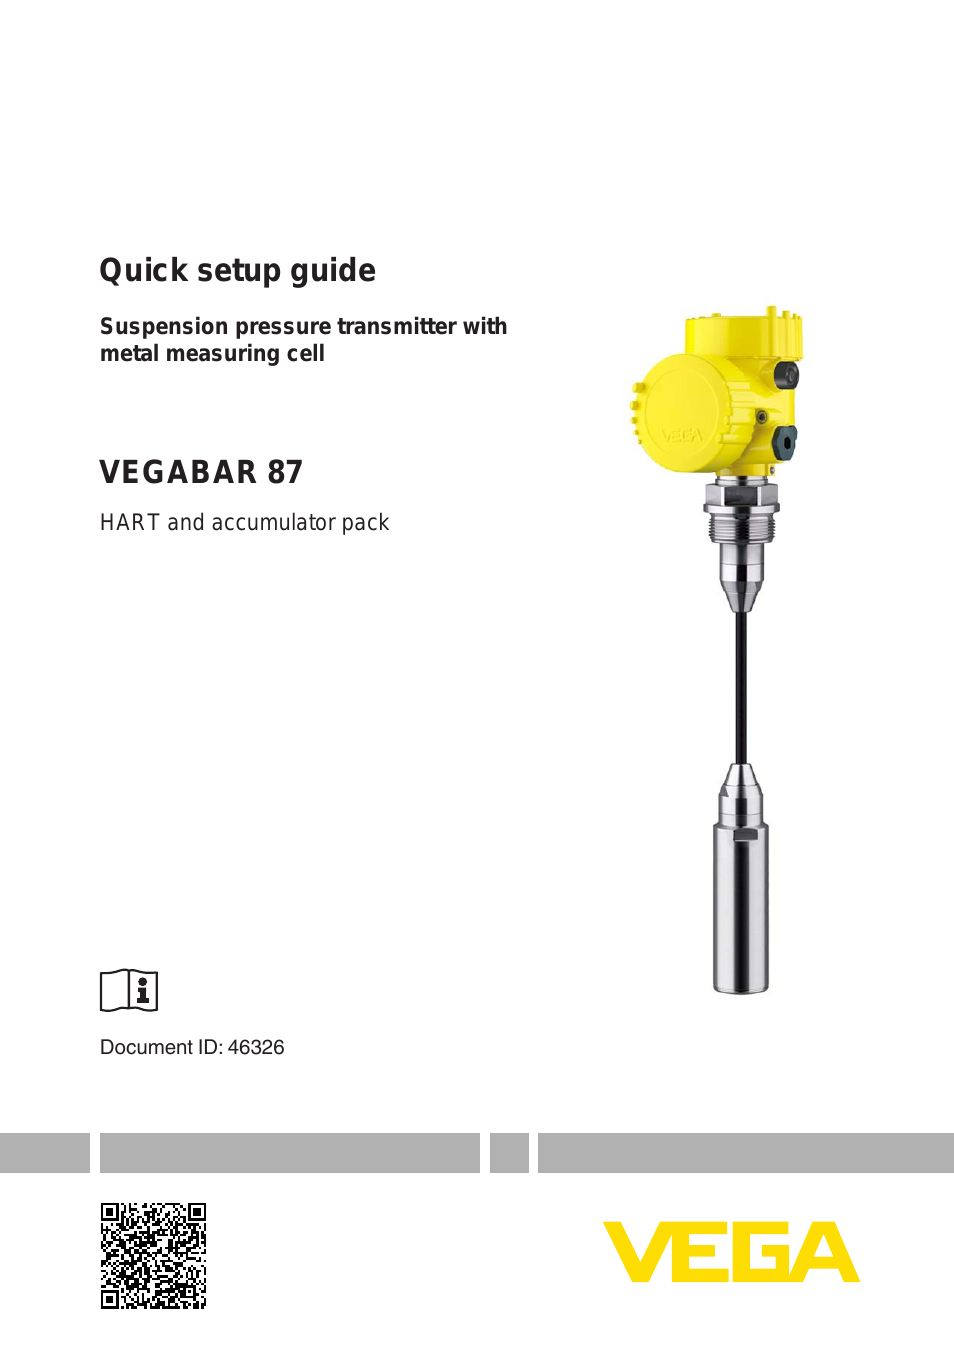 VEGABAR 87 HART and accumulator pack - Quick setup guide